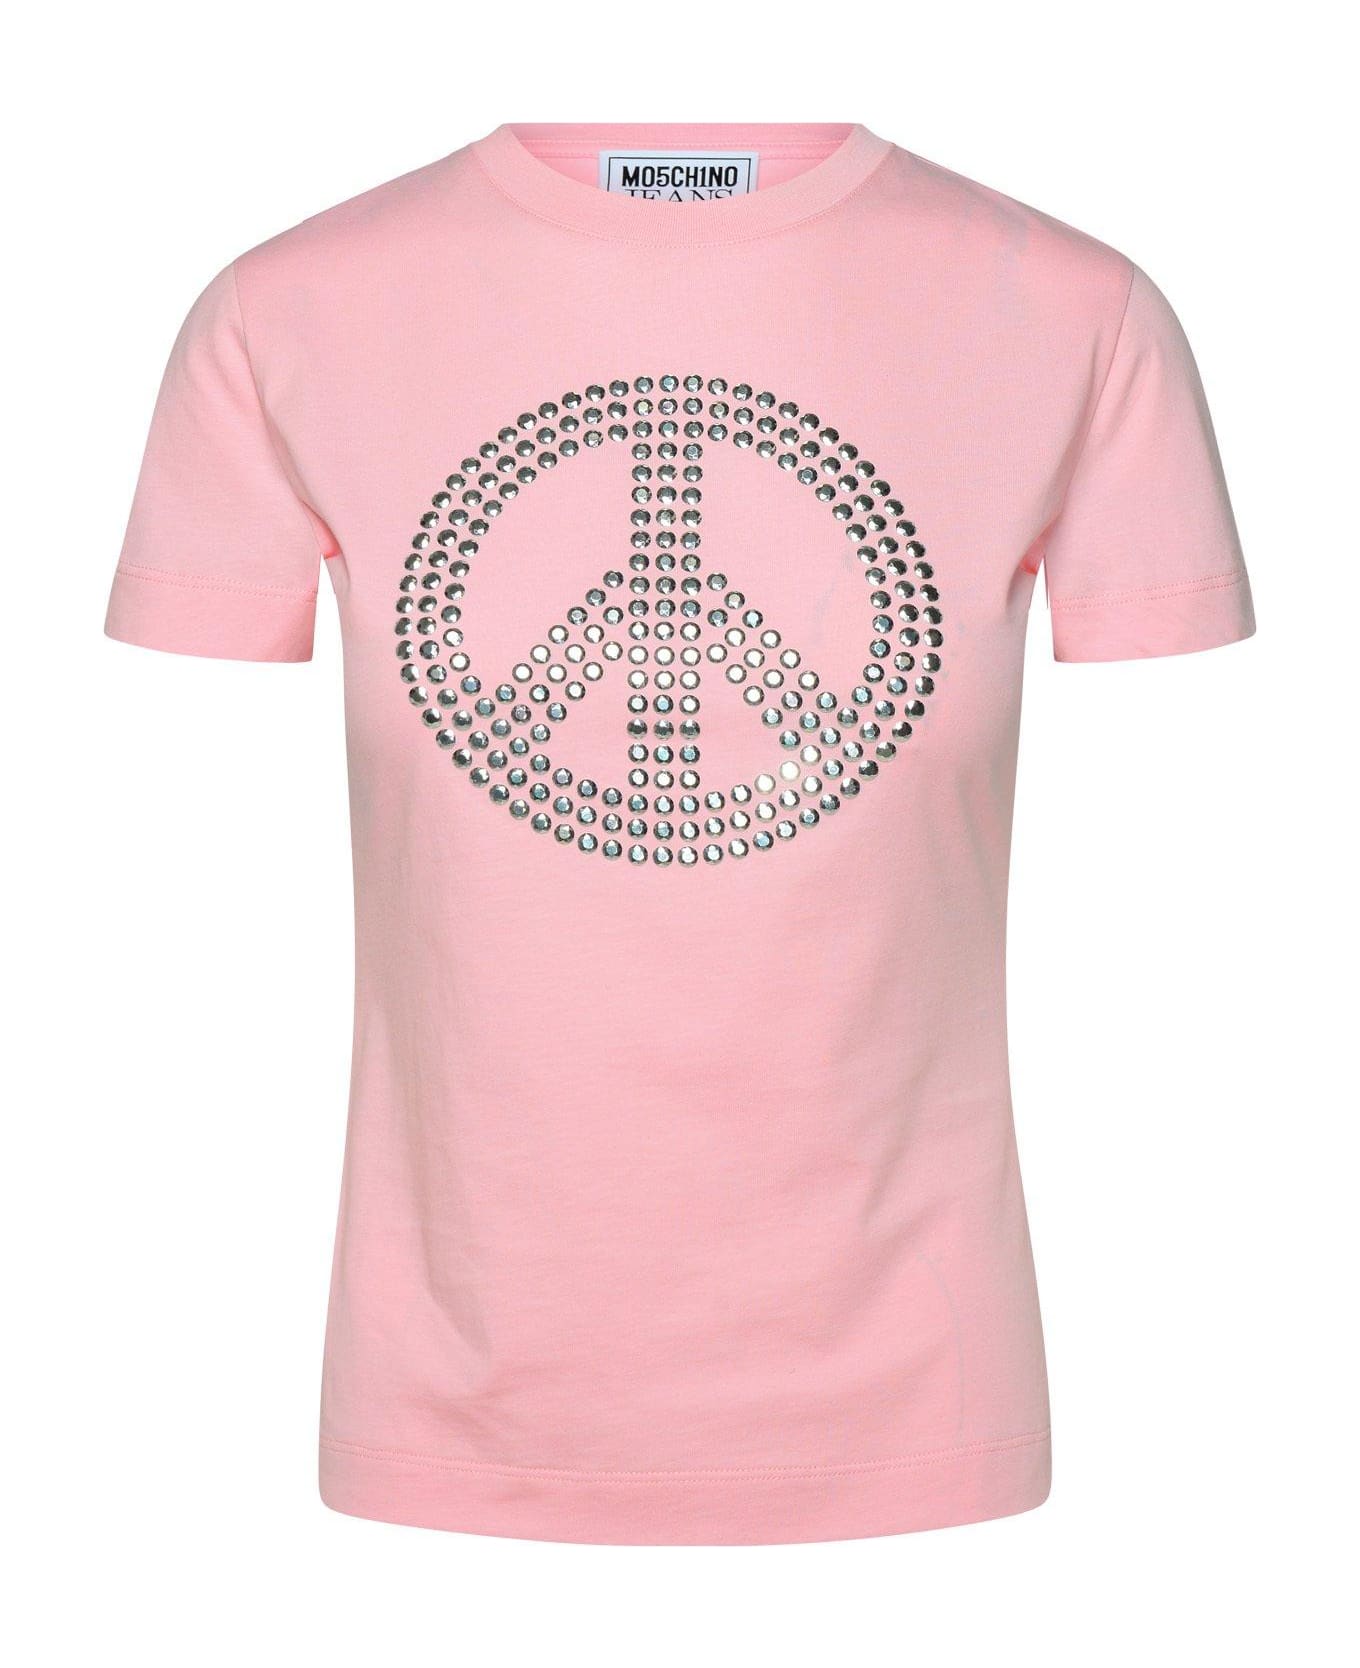 M05CH1N0 Jeans Jeans Peace Sign-motif Crewneck T-shirt - Pink